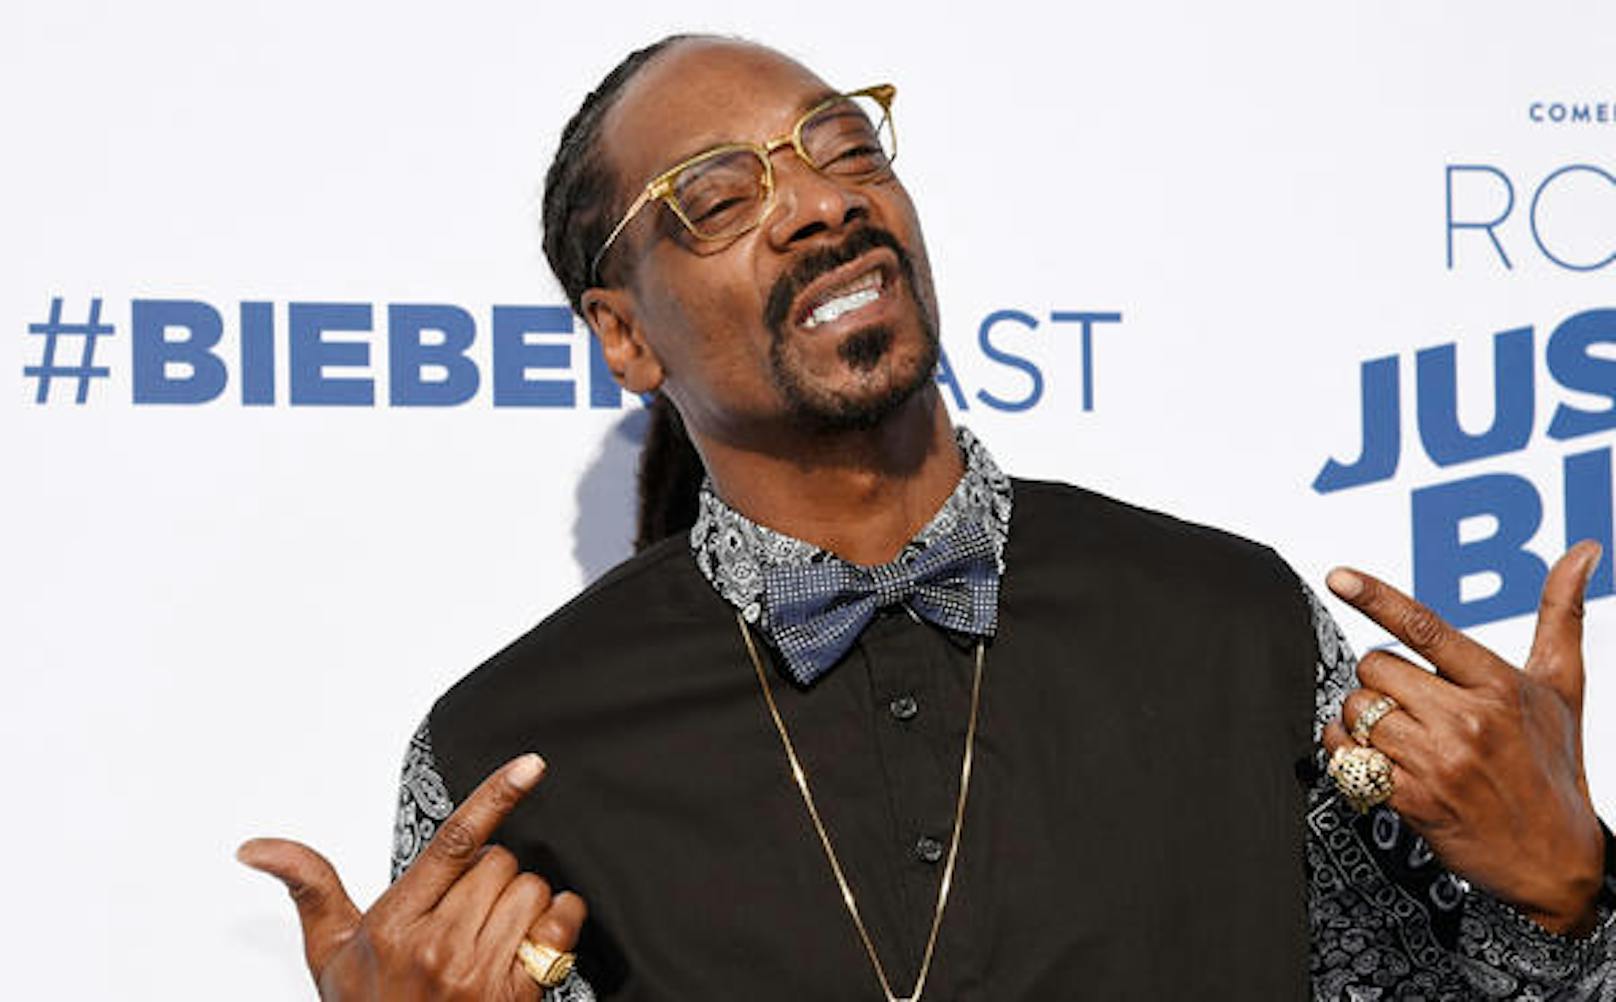 Snoop Dogg bietet sich als Twitter-Boss an